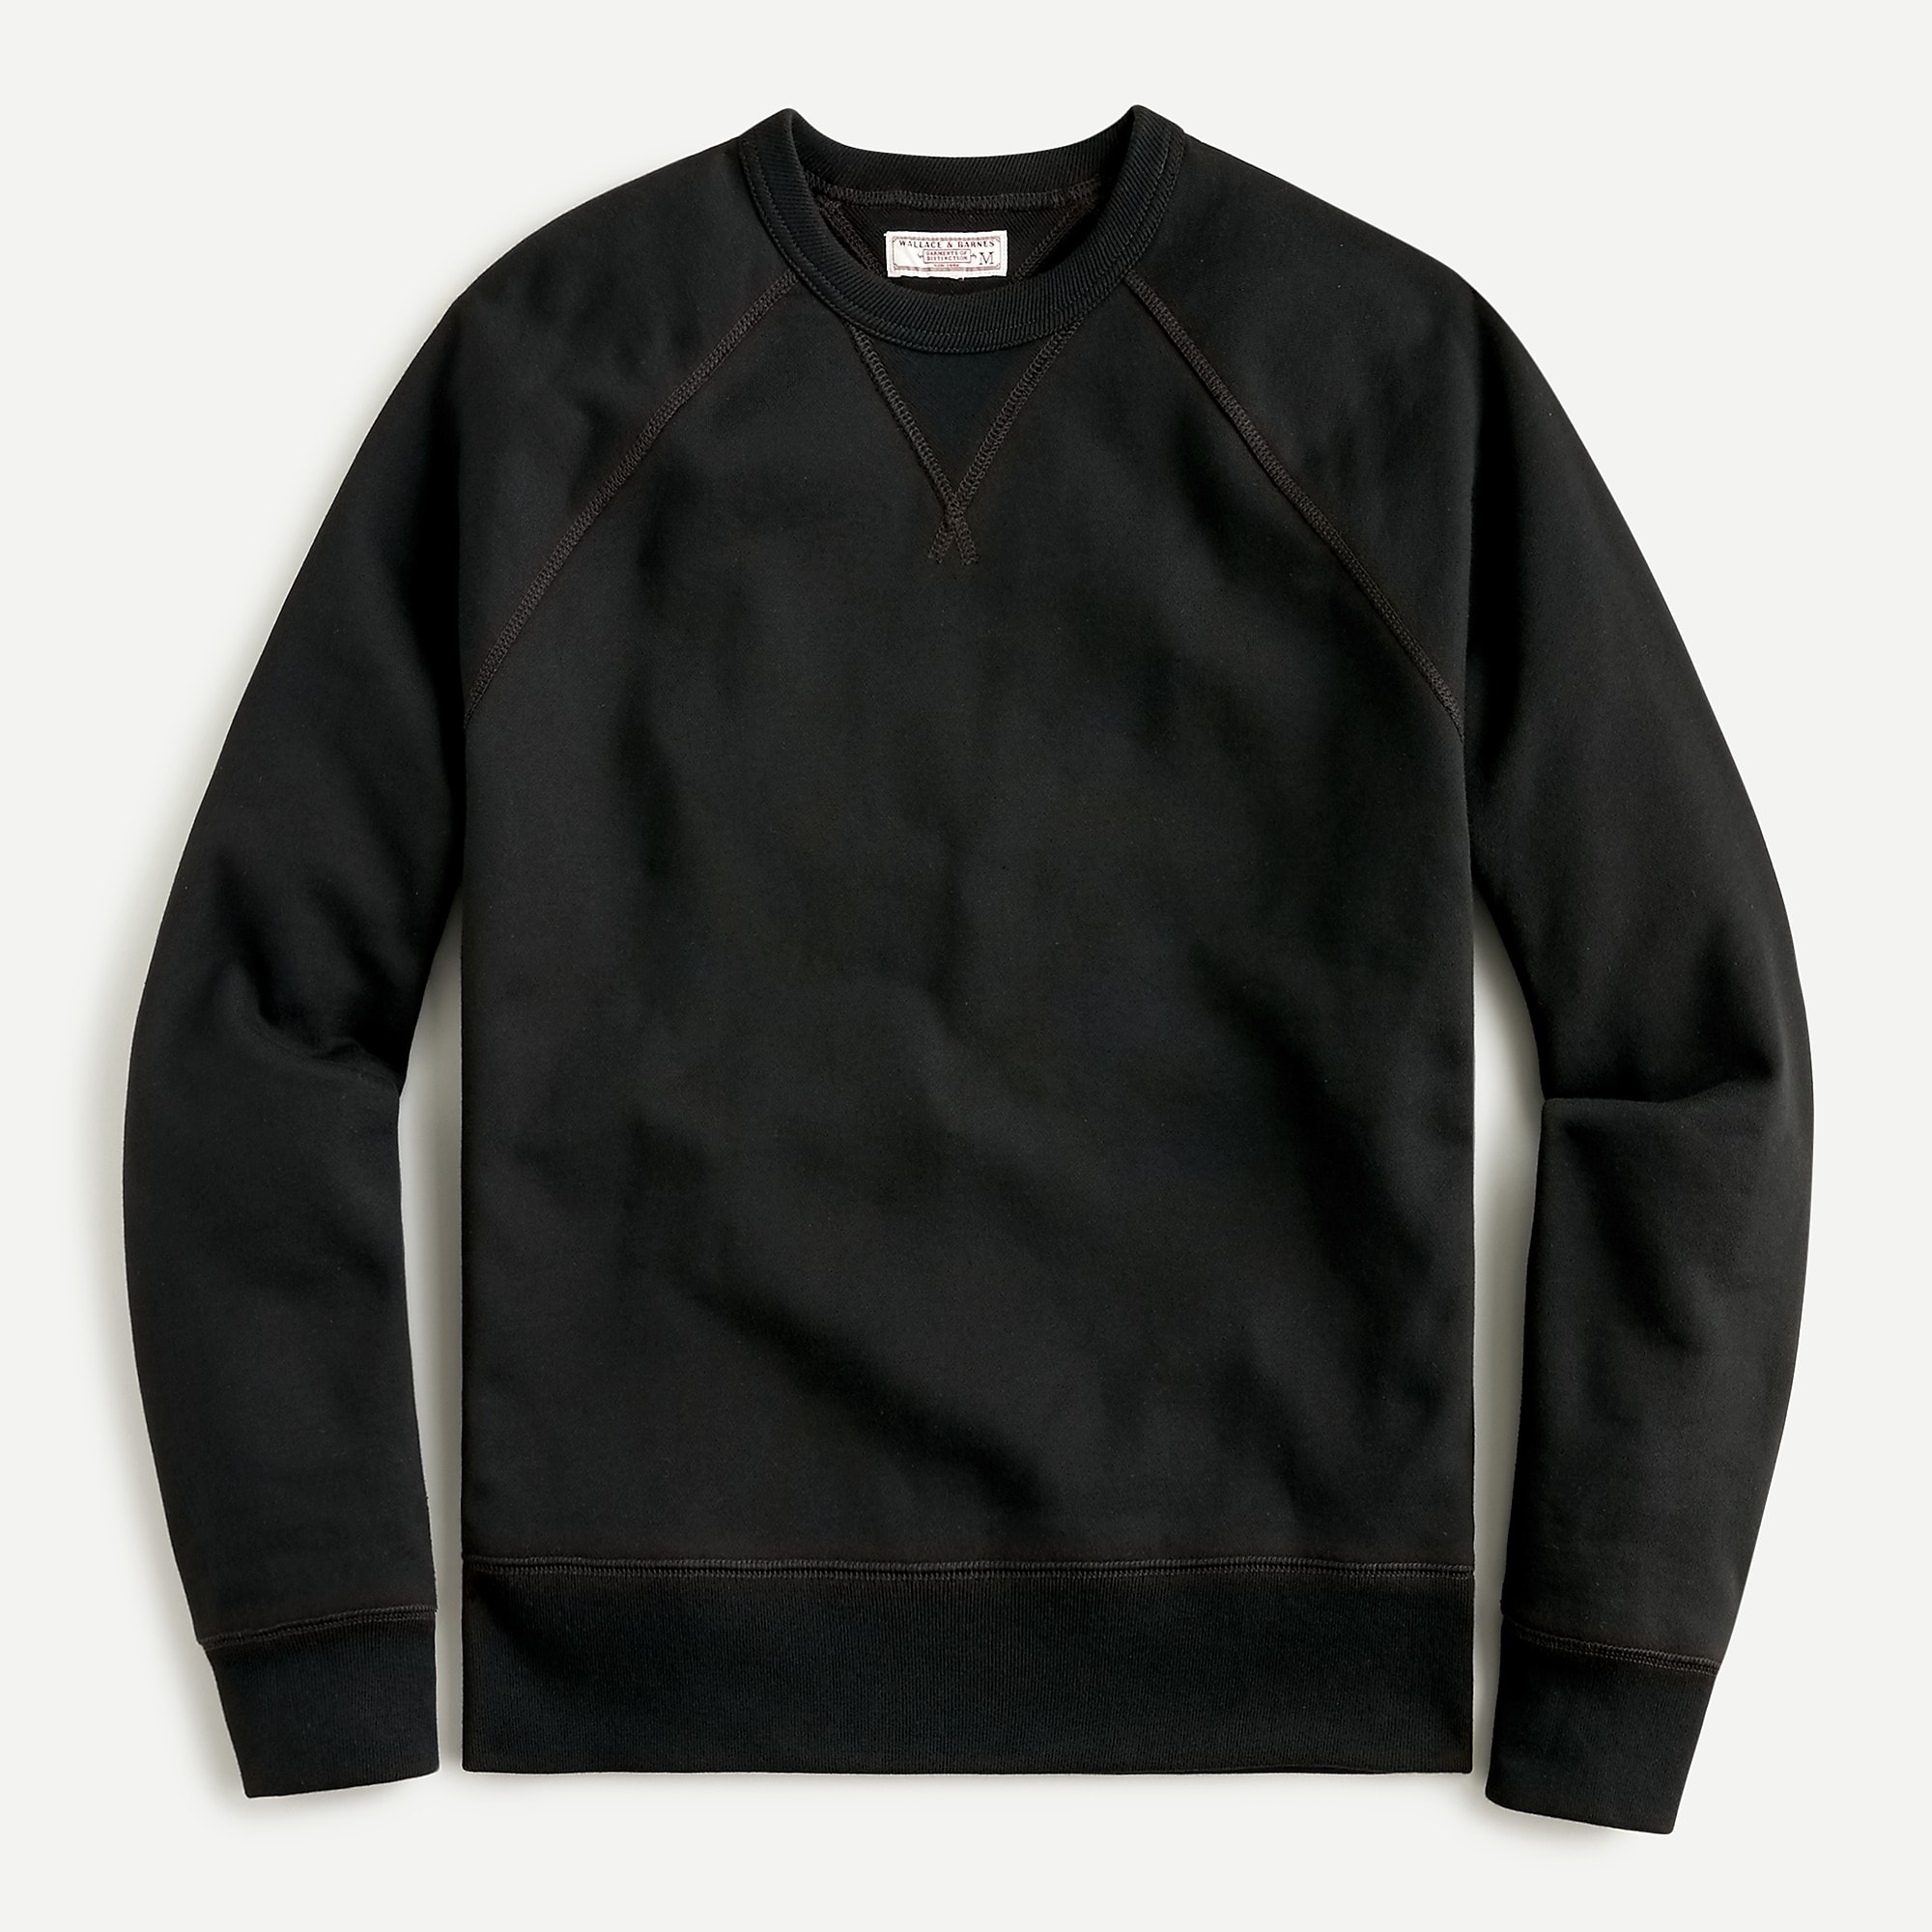  Wallace & Barnes heritage fleece sweatshirt